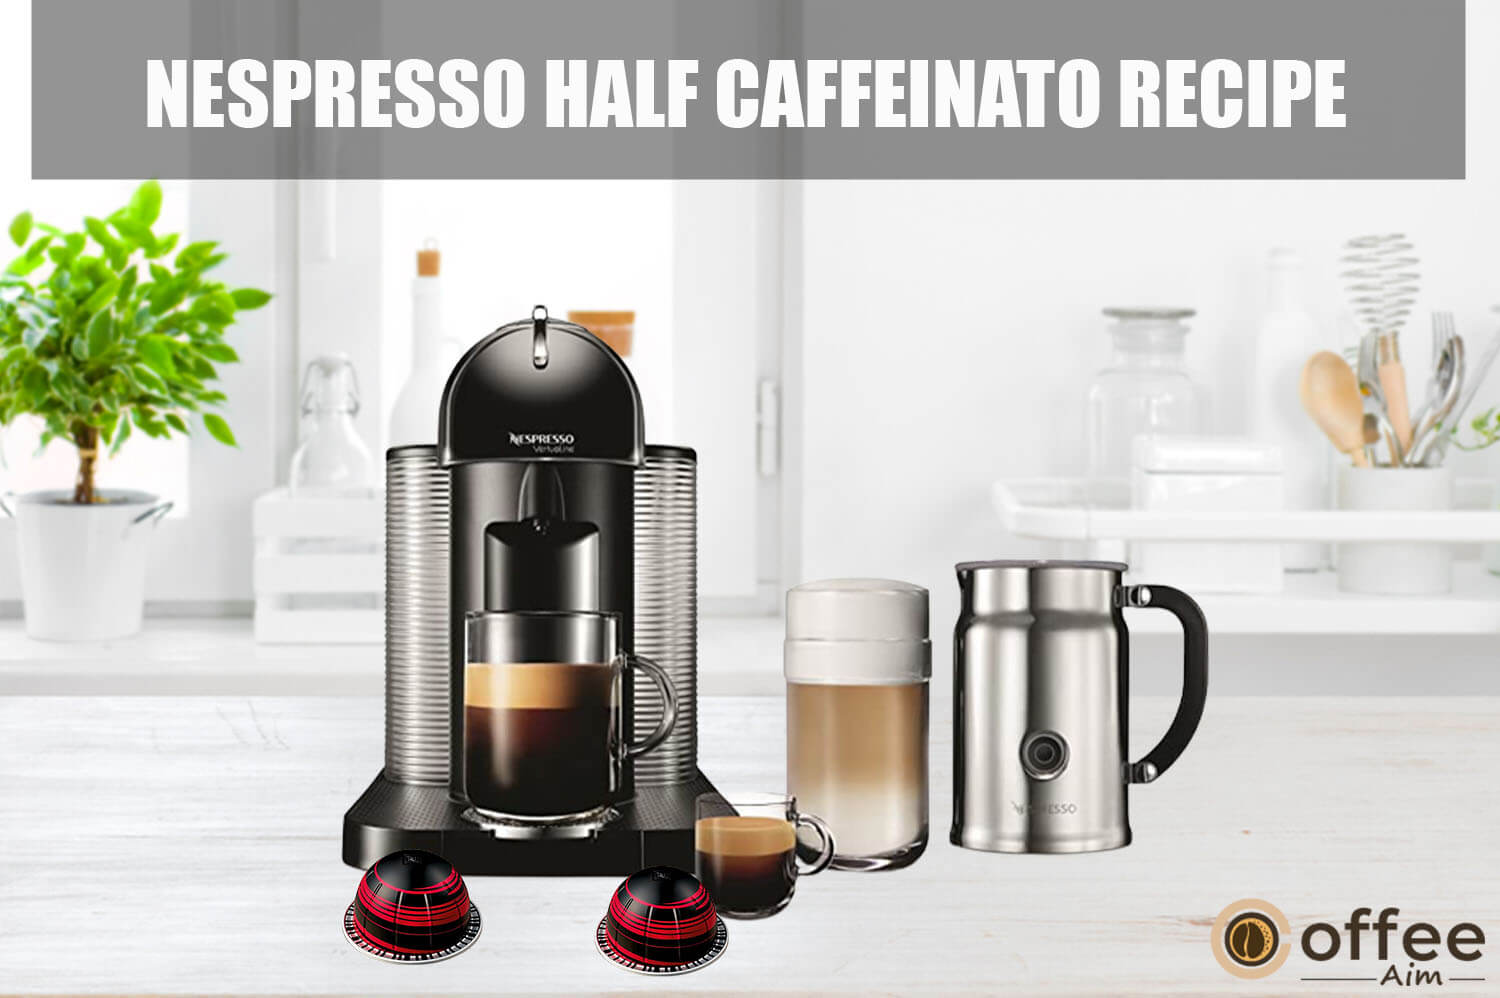 Featured image for the article "Nespresso Half Caffeinato Recipe"